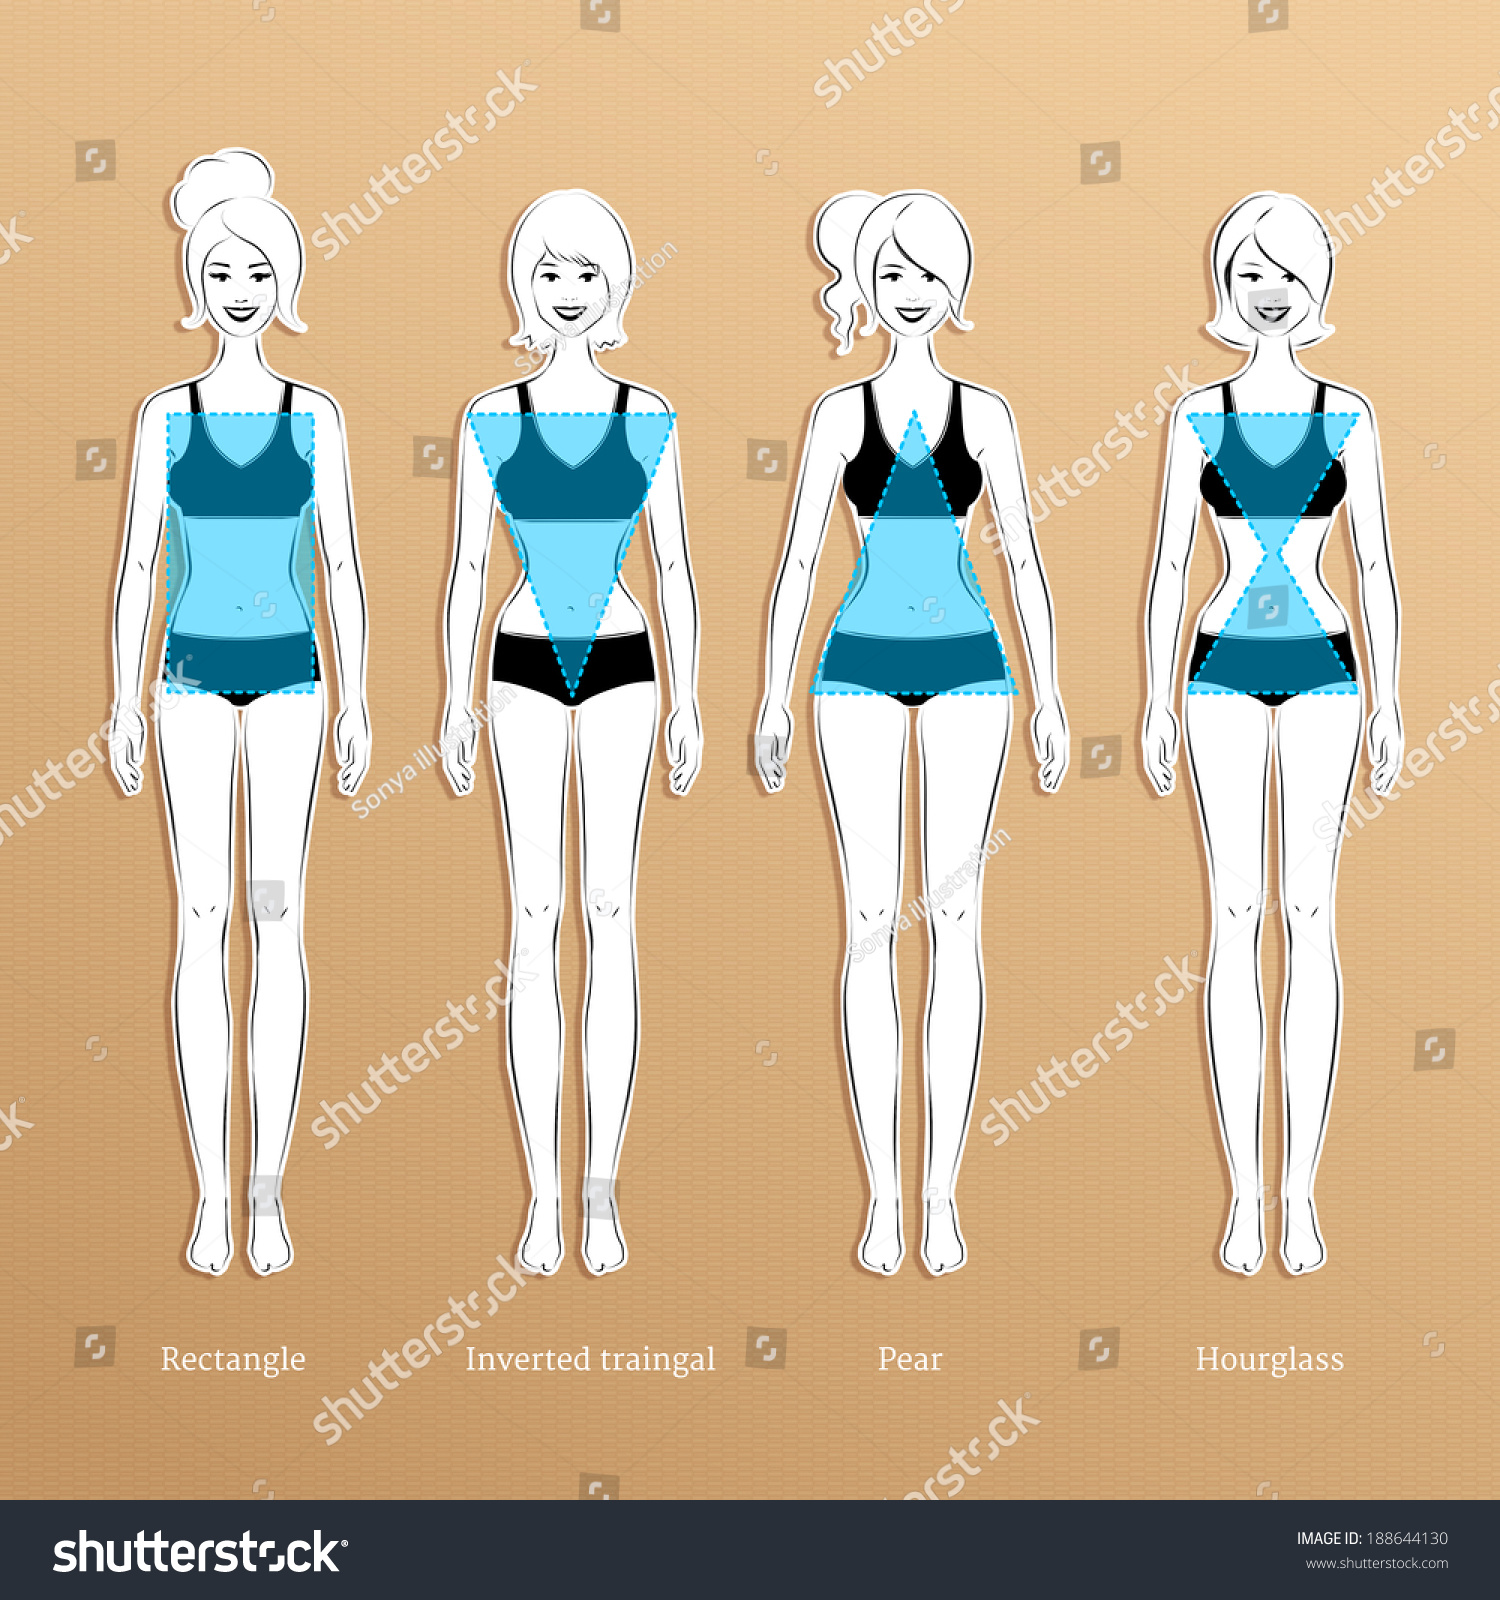 Female Body Types. Vector Illustration. - 188644130 : Shutterstock